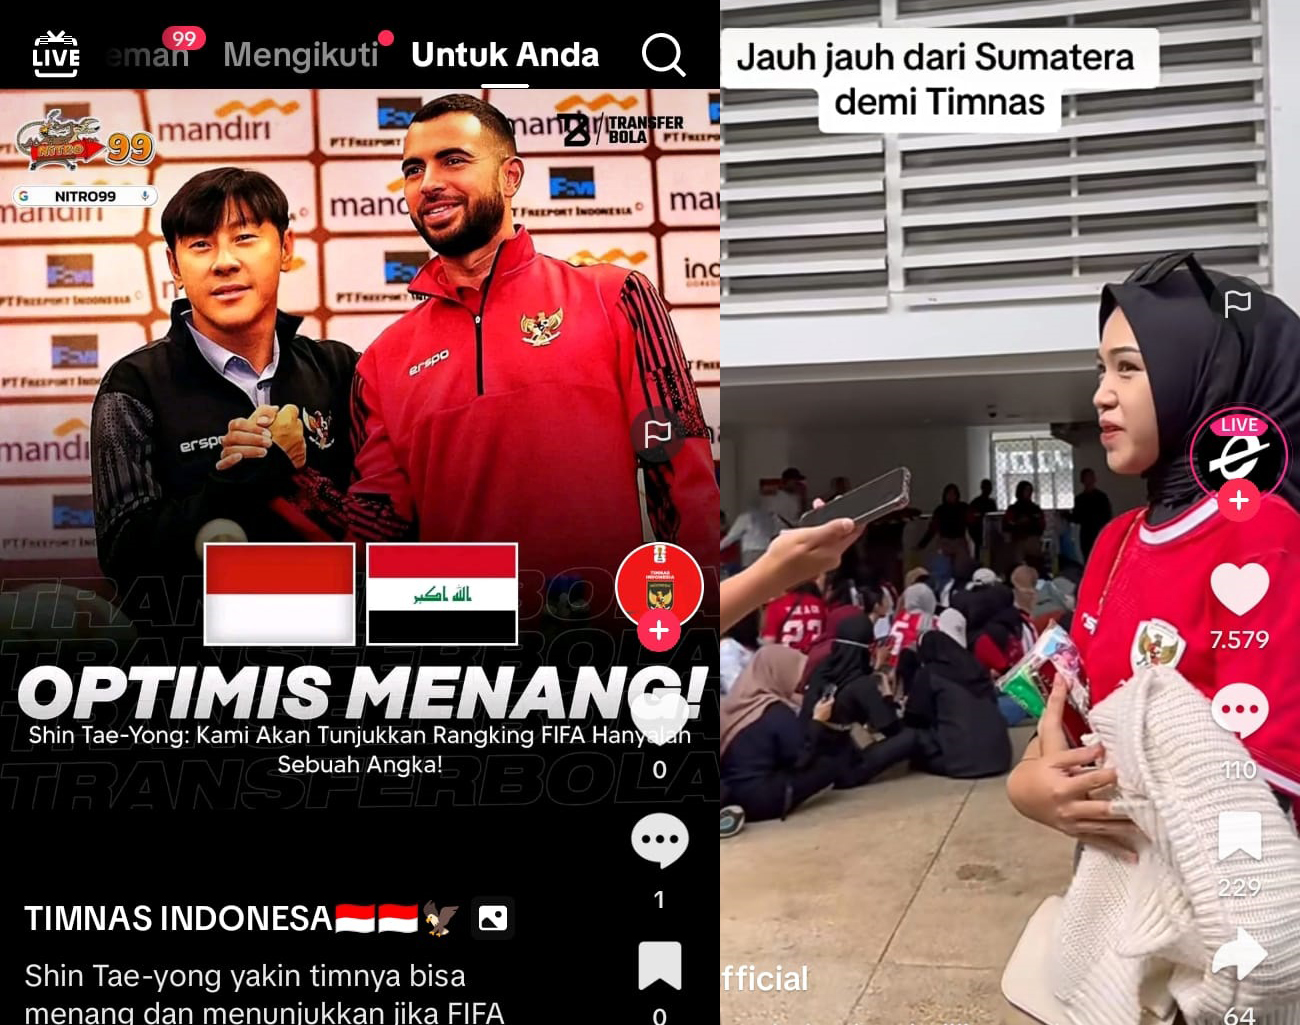 Pelatih Timnas Indonesia Shin Tae Young: Rangking FIFA hanya Angka, Optimis Menang Lawan Irak, Piala Dunia